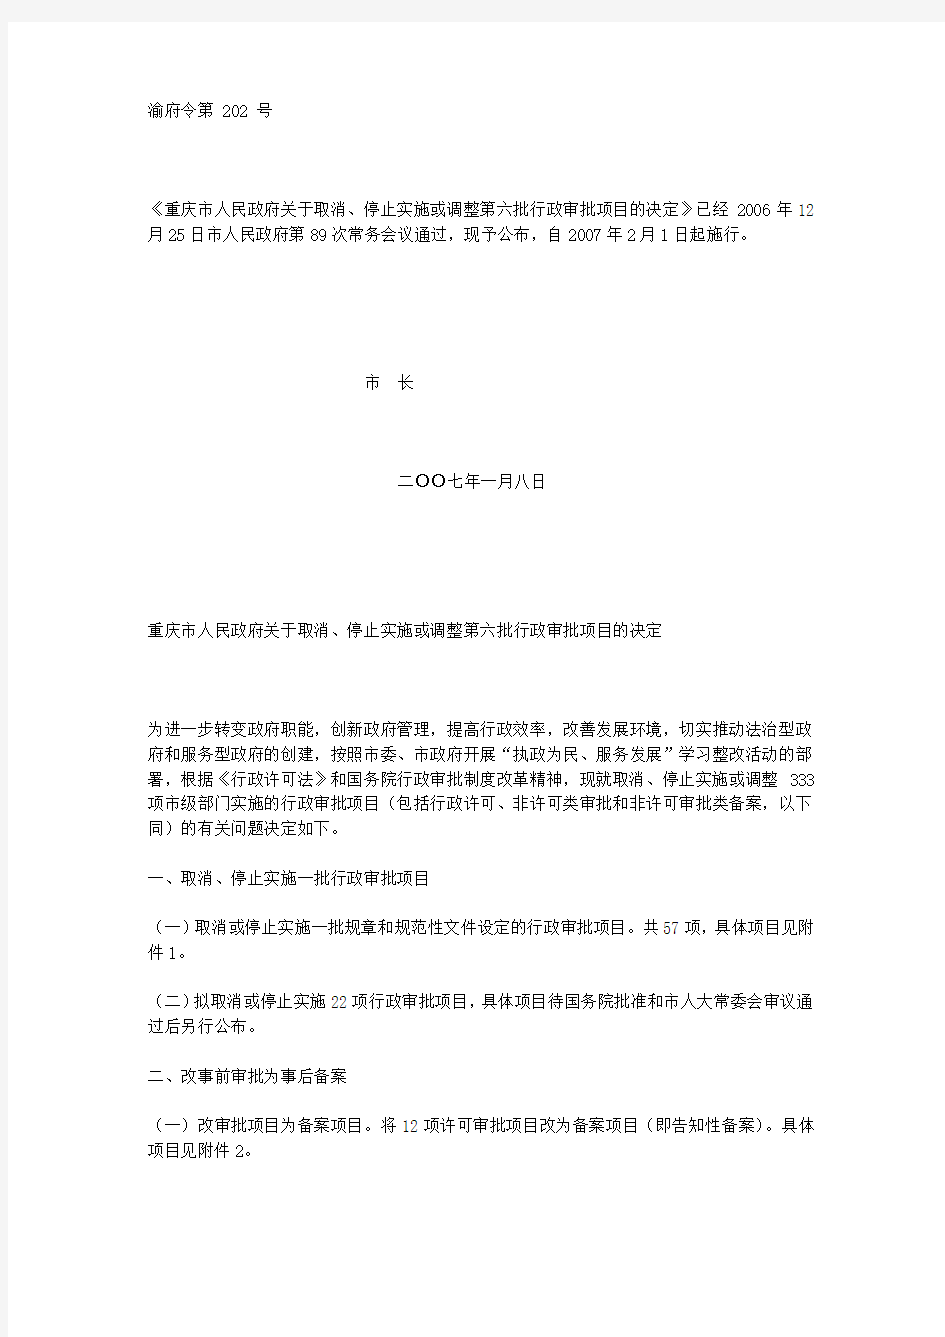 重庆市人民政府关于取消、停止实施或调整第六批行政审批项目的决定